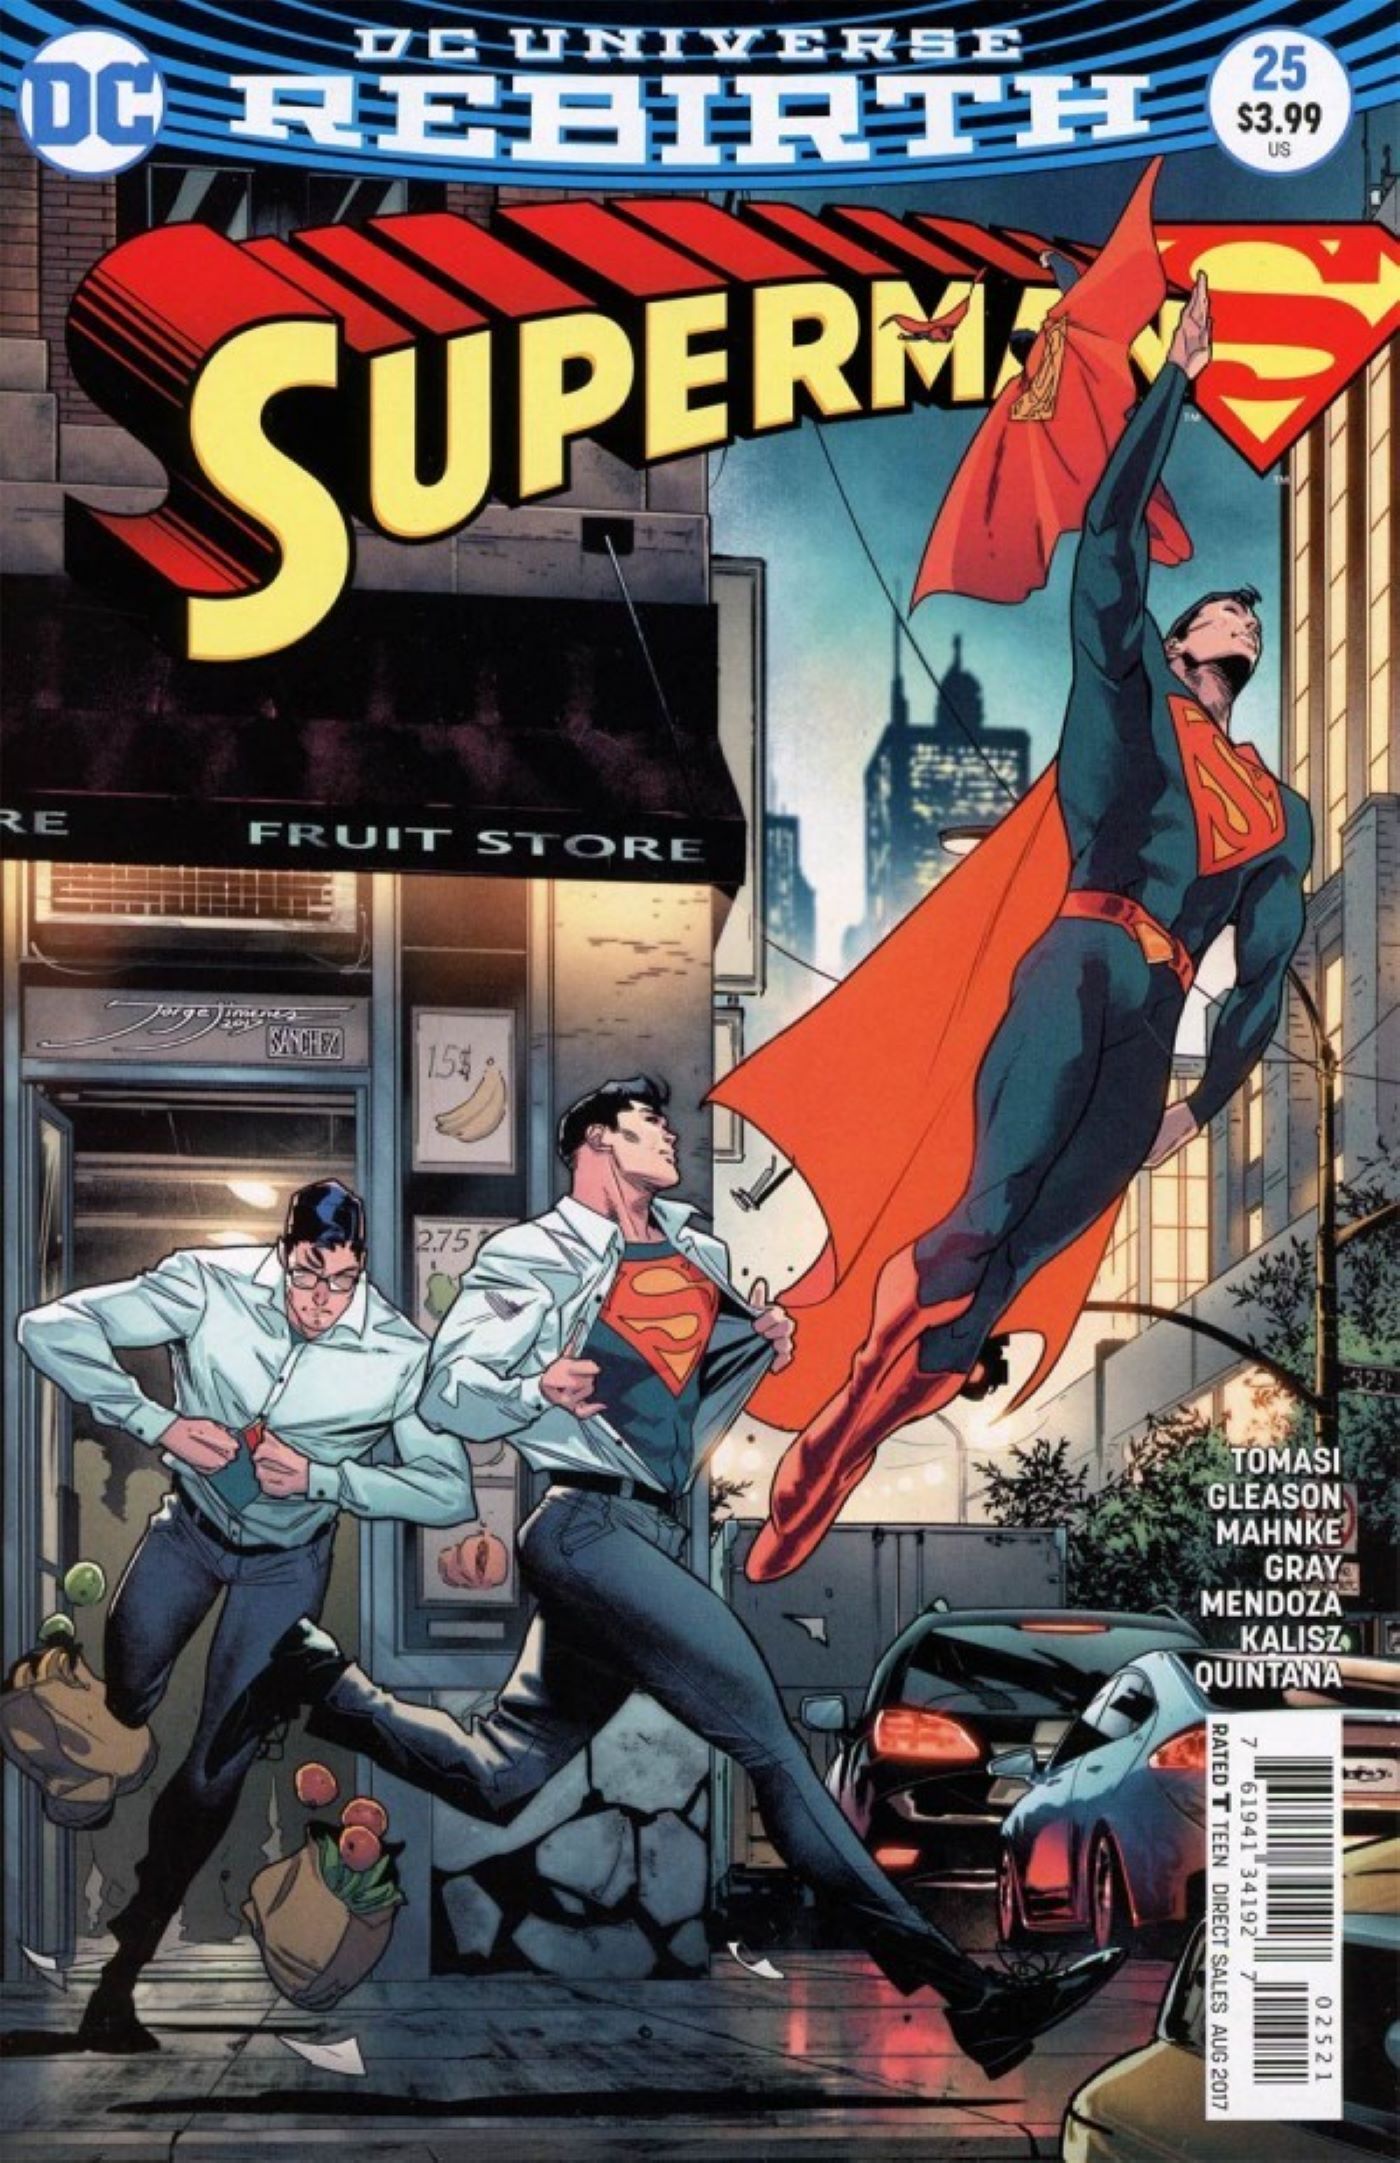 Capa variante do renascimento do Superman # 25 com mudança rápida do Superman